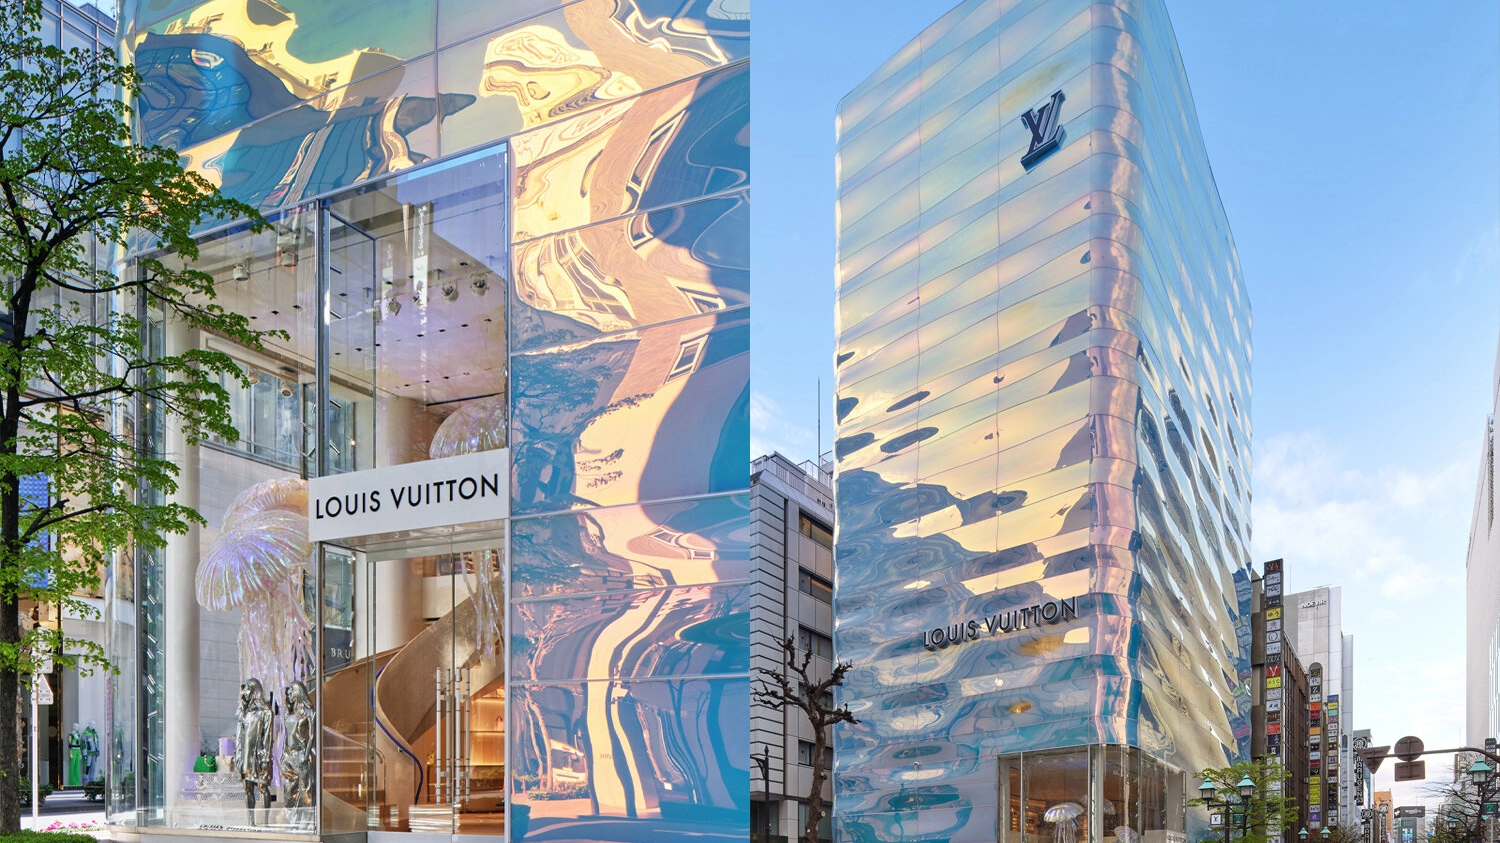 Gli architetti Jun Aoki e Peter Marino hanno ristrutturato, a Tokyo, il più grande store della maison. Il palazzo è pensato come una enorme cascata d'acqua